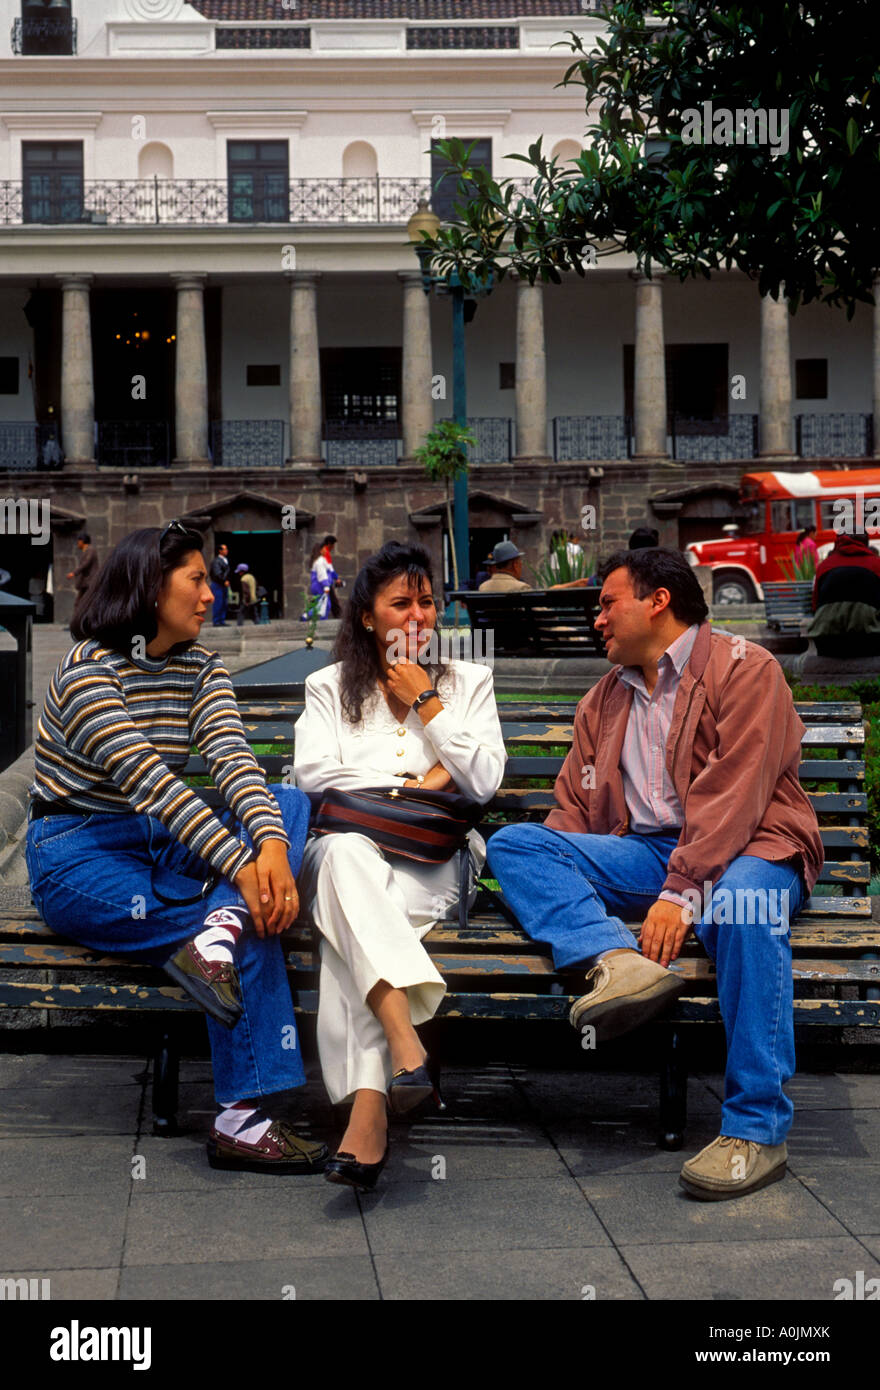 Ecuadorianischen Volk, Männer und Frauen reden, Platz der Unabhängigkeit, der Plaza de la Independencia, Quito, Provinz Pichincha, Ecuador, Südamerika Stockfoto